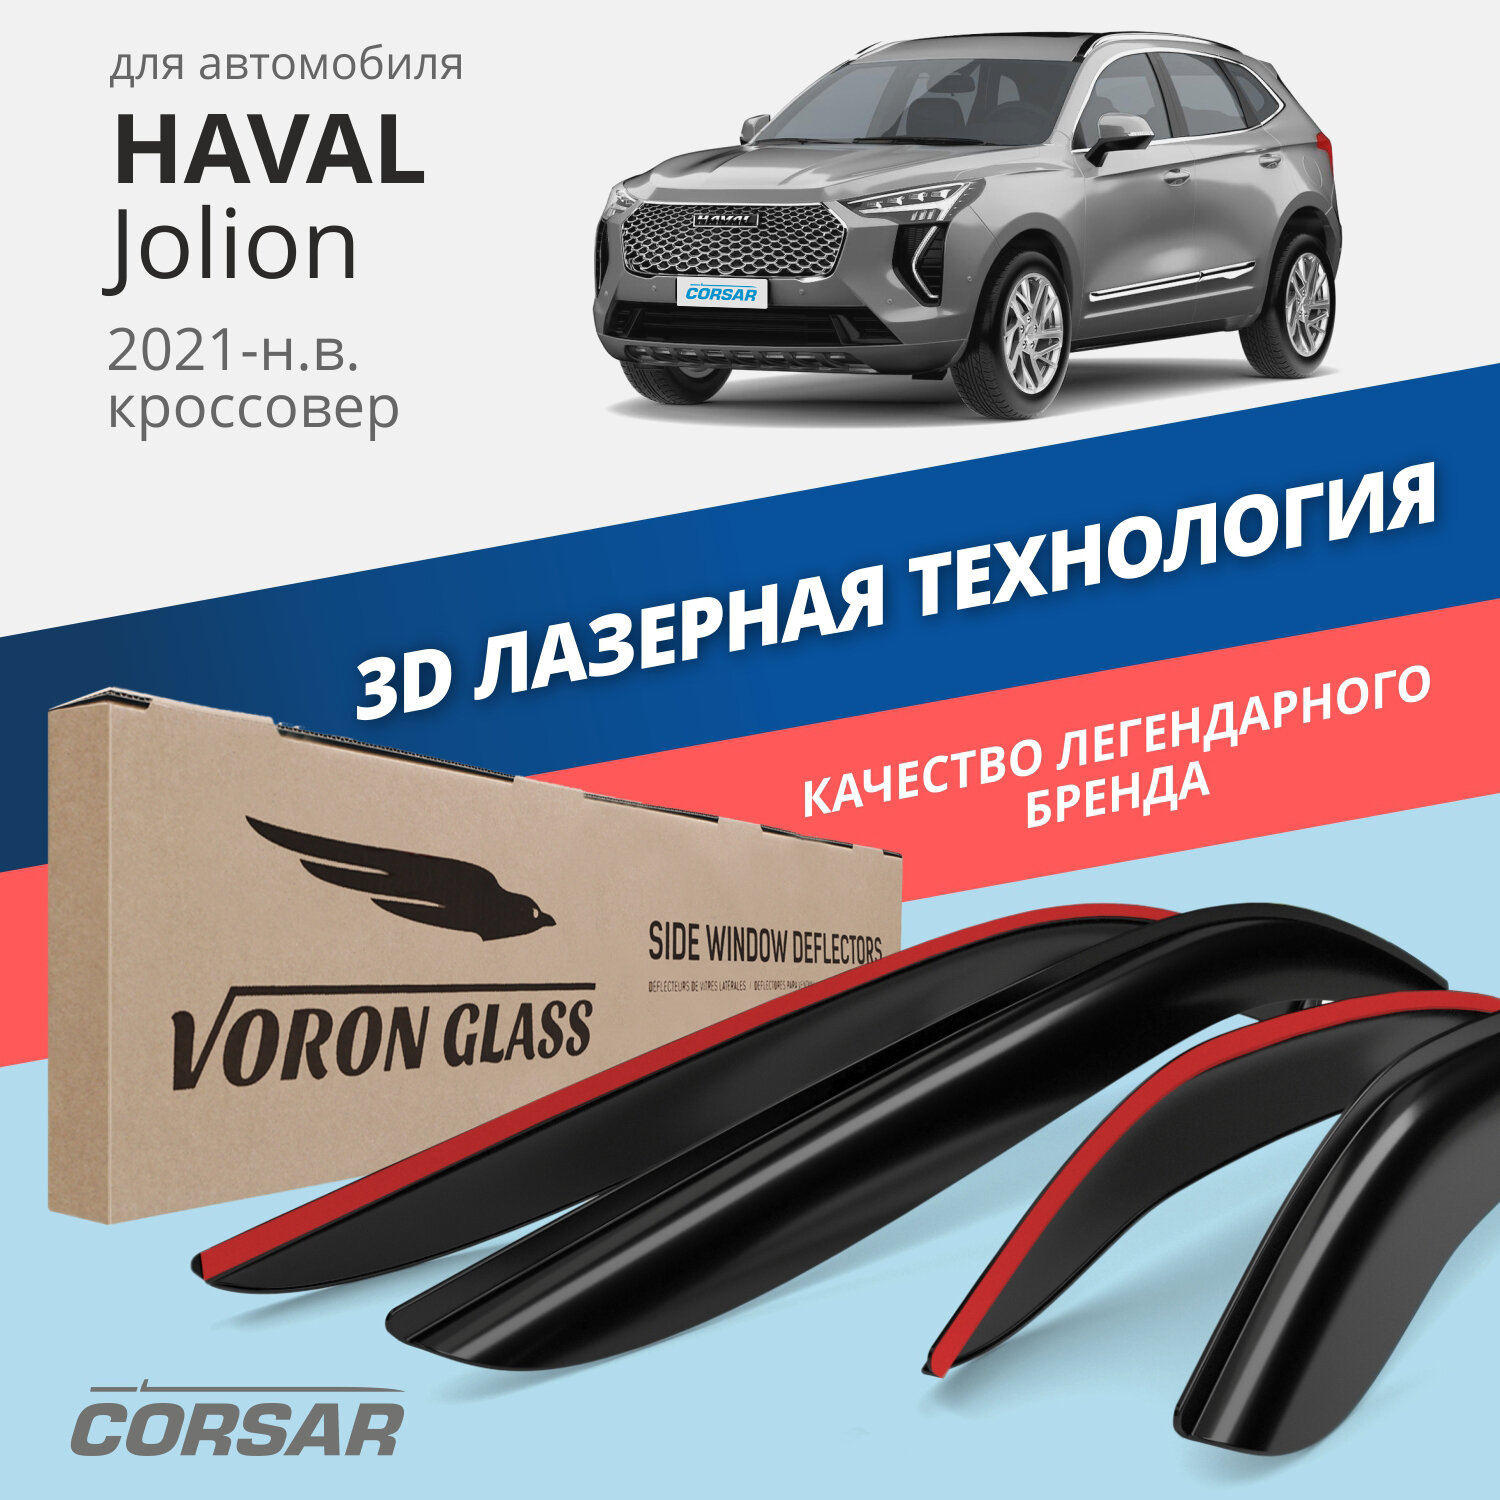 Дефлекторы на боковые стекла Haval Jolion 2021-н. в. накладные 4 шт. Voron Glass Corsar